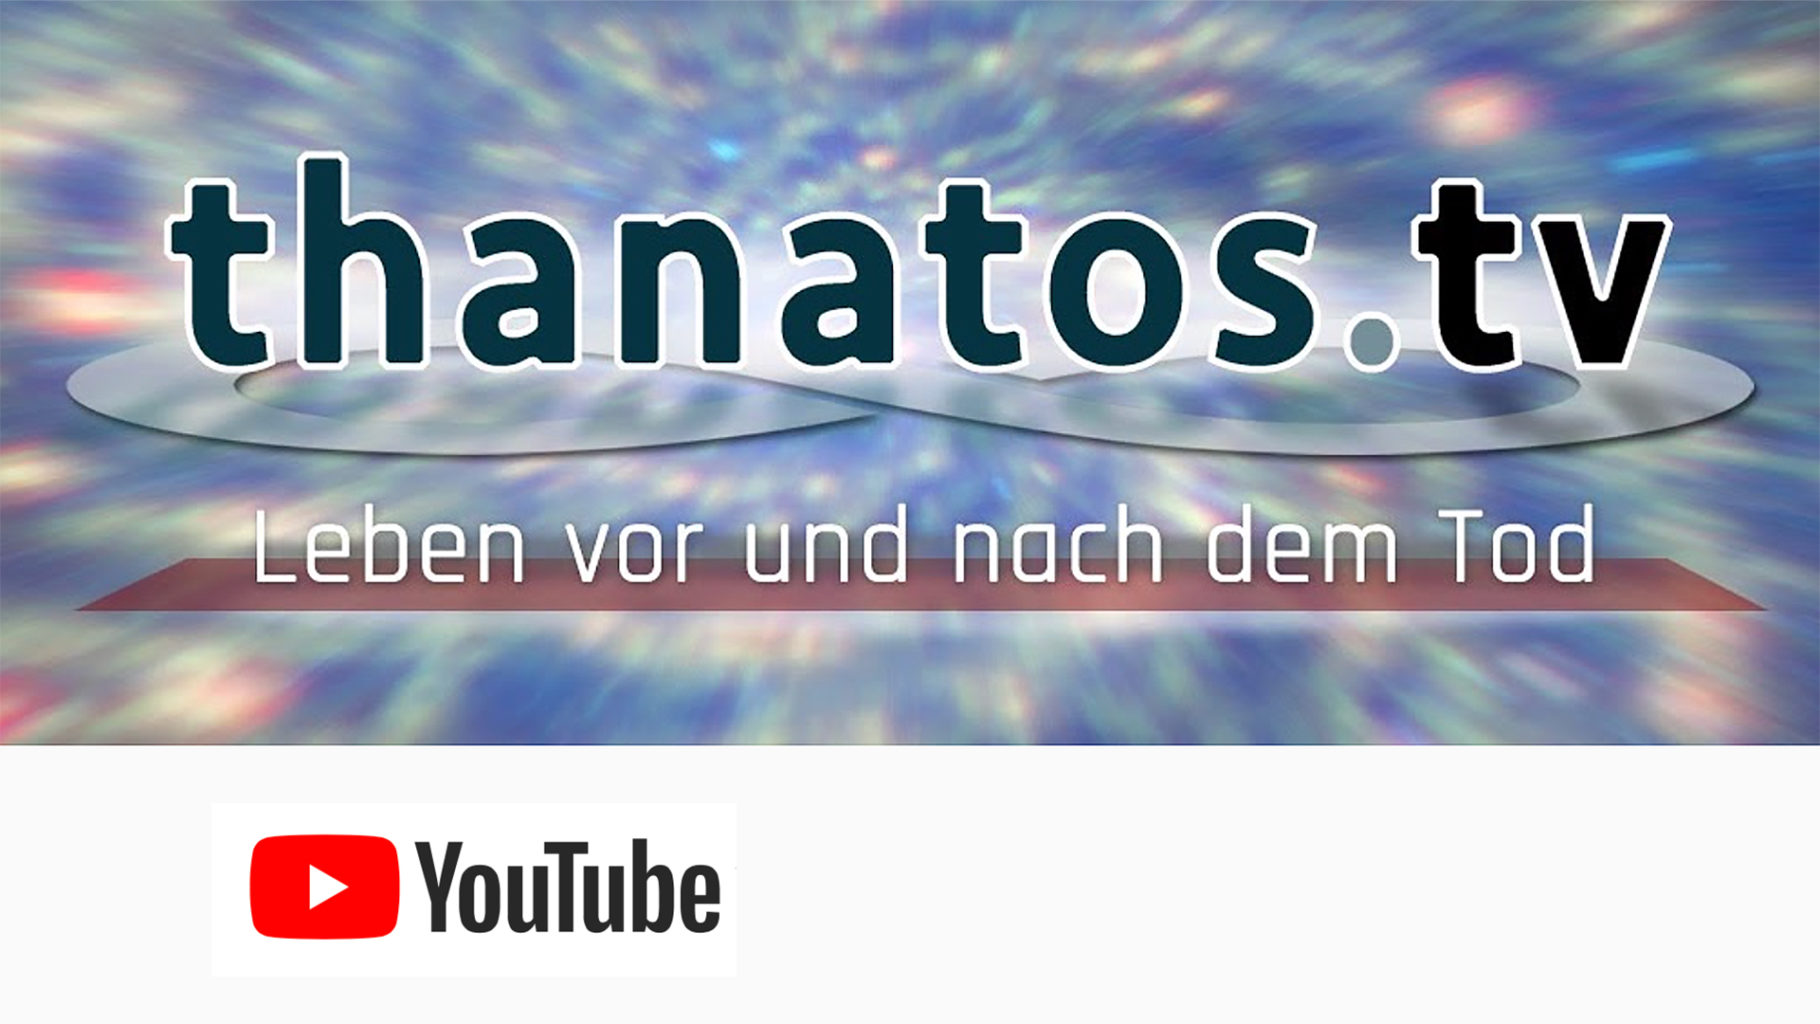 100.000 YouTube-Abonnenten für Thanatos TV